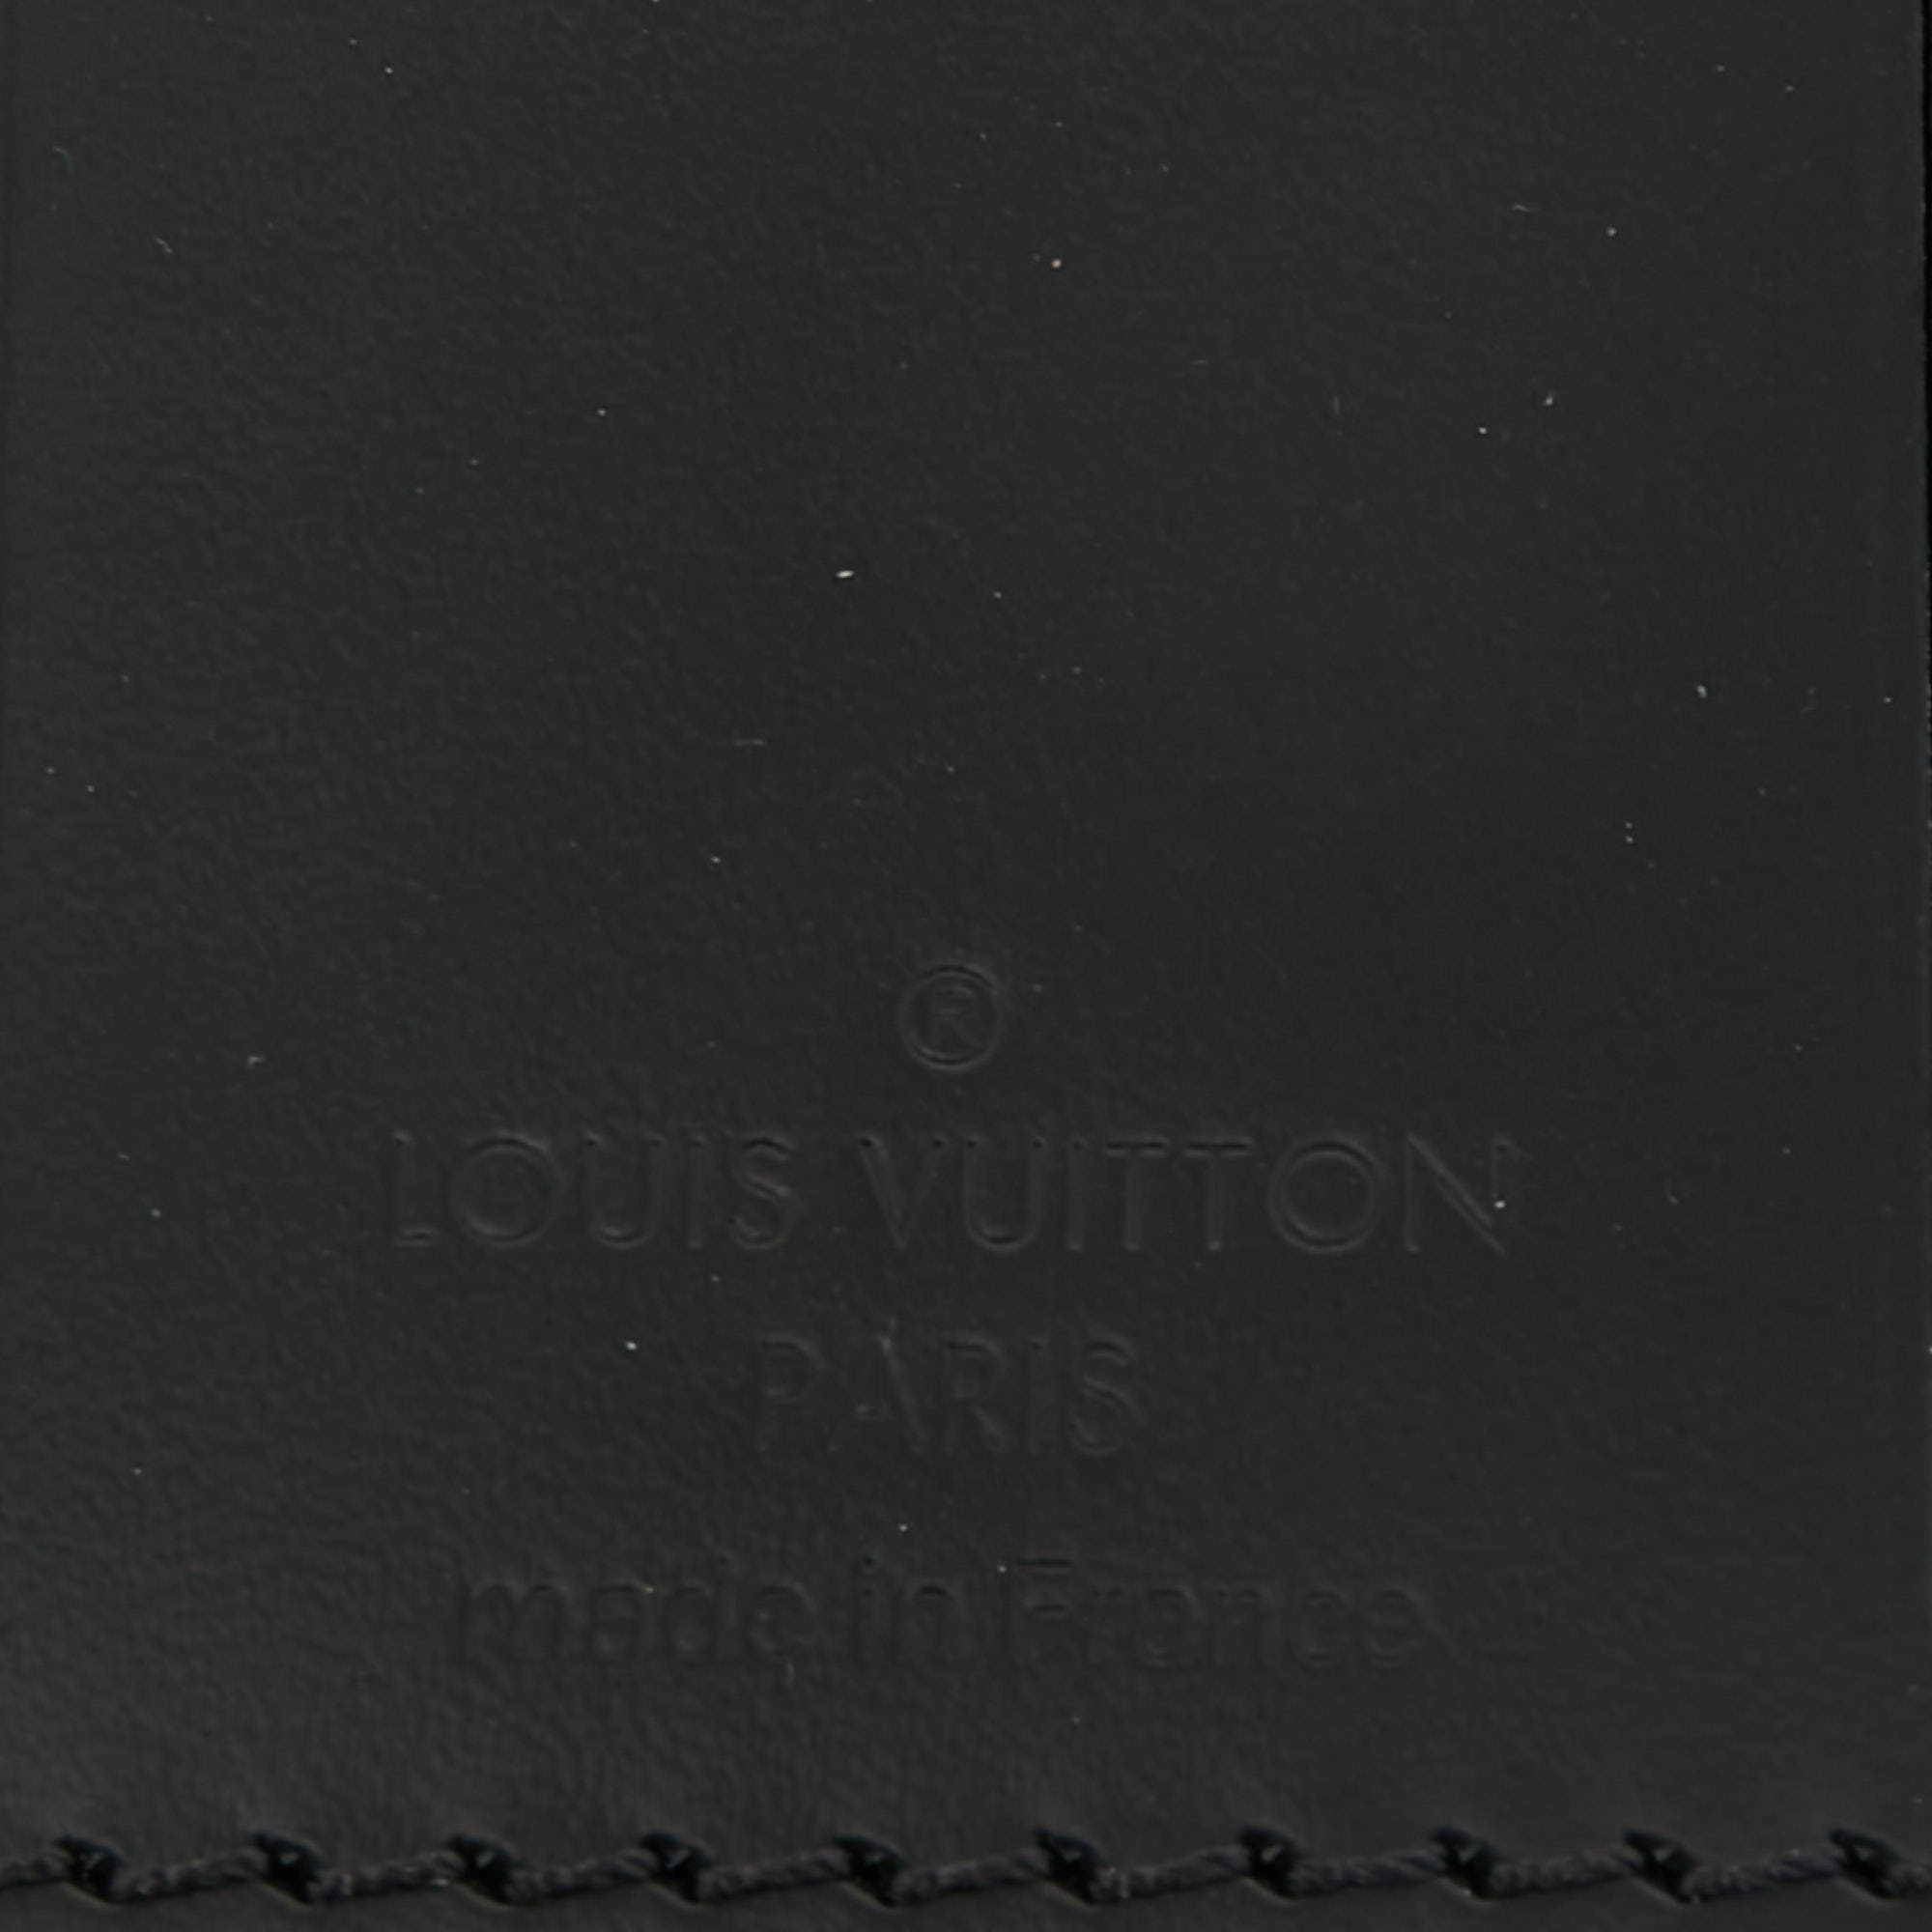 Louis Vuitton, Accessories, Louis Vuitton Paris Made In France Wallet